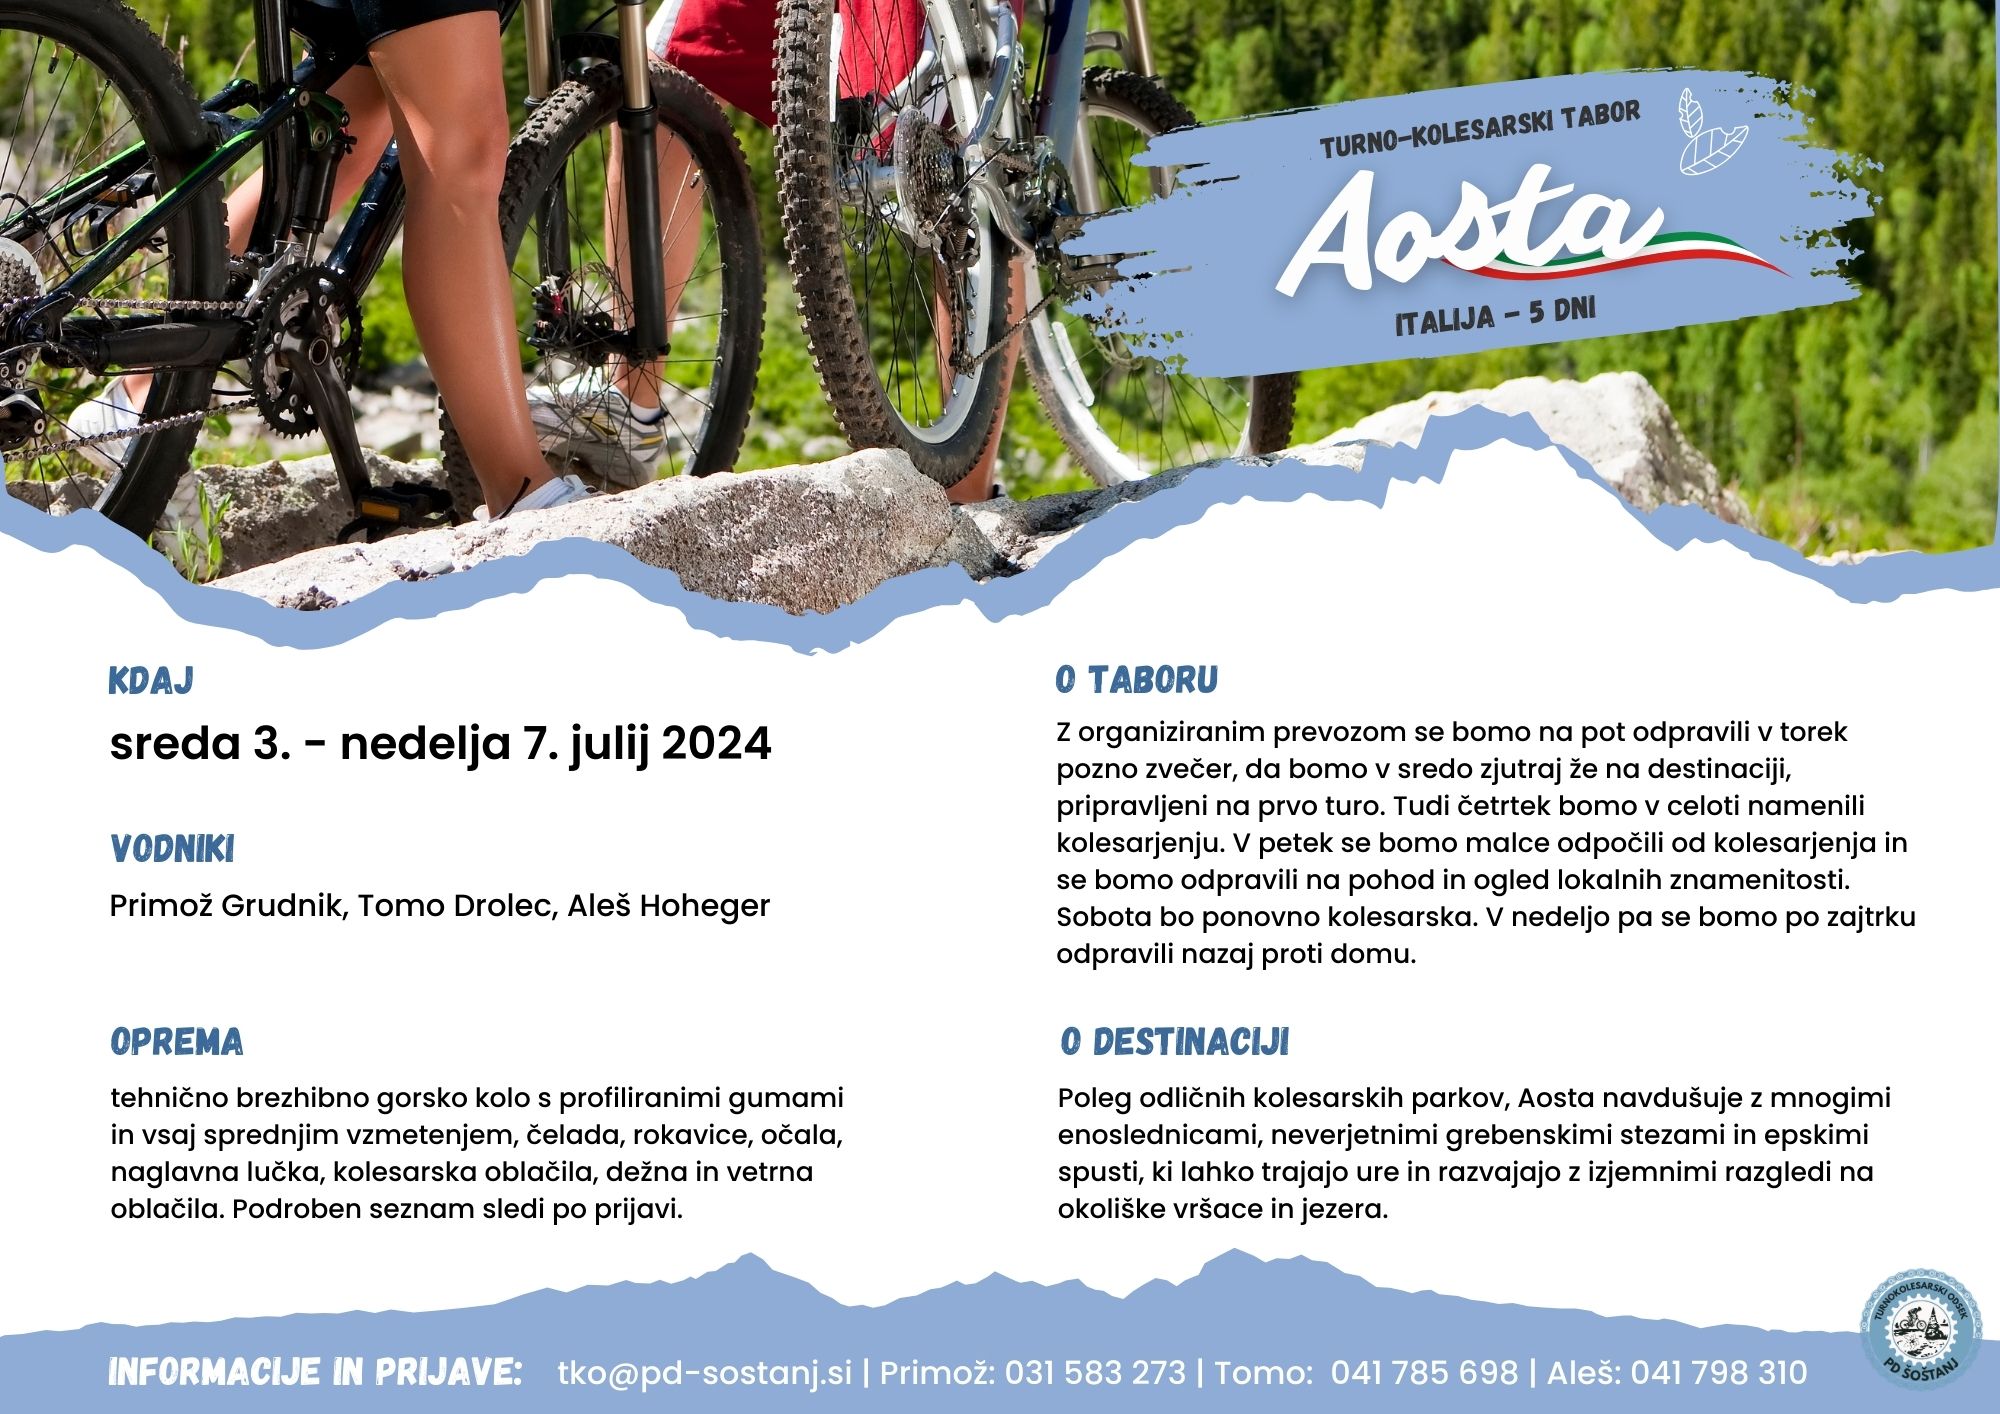 Turno-kolesarski tabor 2024 - AOSTA